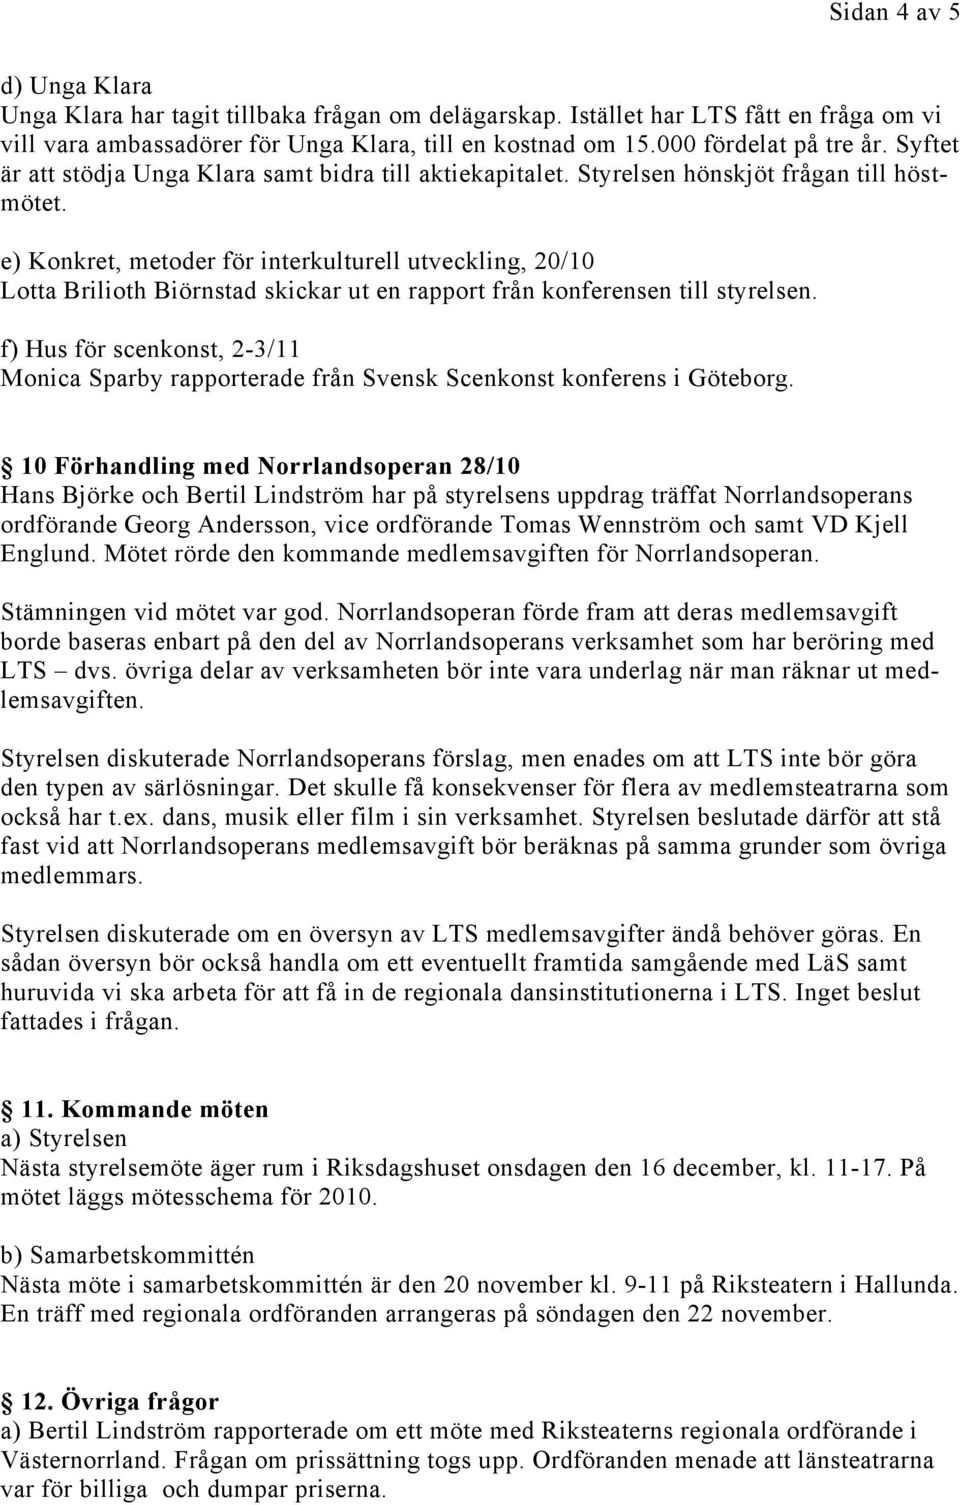 e) Konkret, metoder för interkulturell utveckling, 20/10 Lotta Brilioth Biörnstad skickar ut en rapport från konferensen till styrelsen.